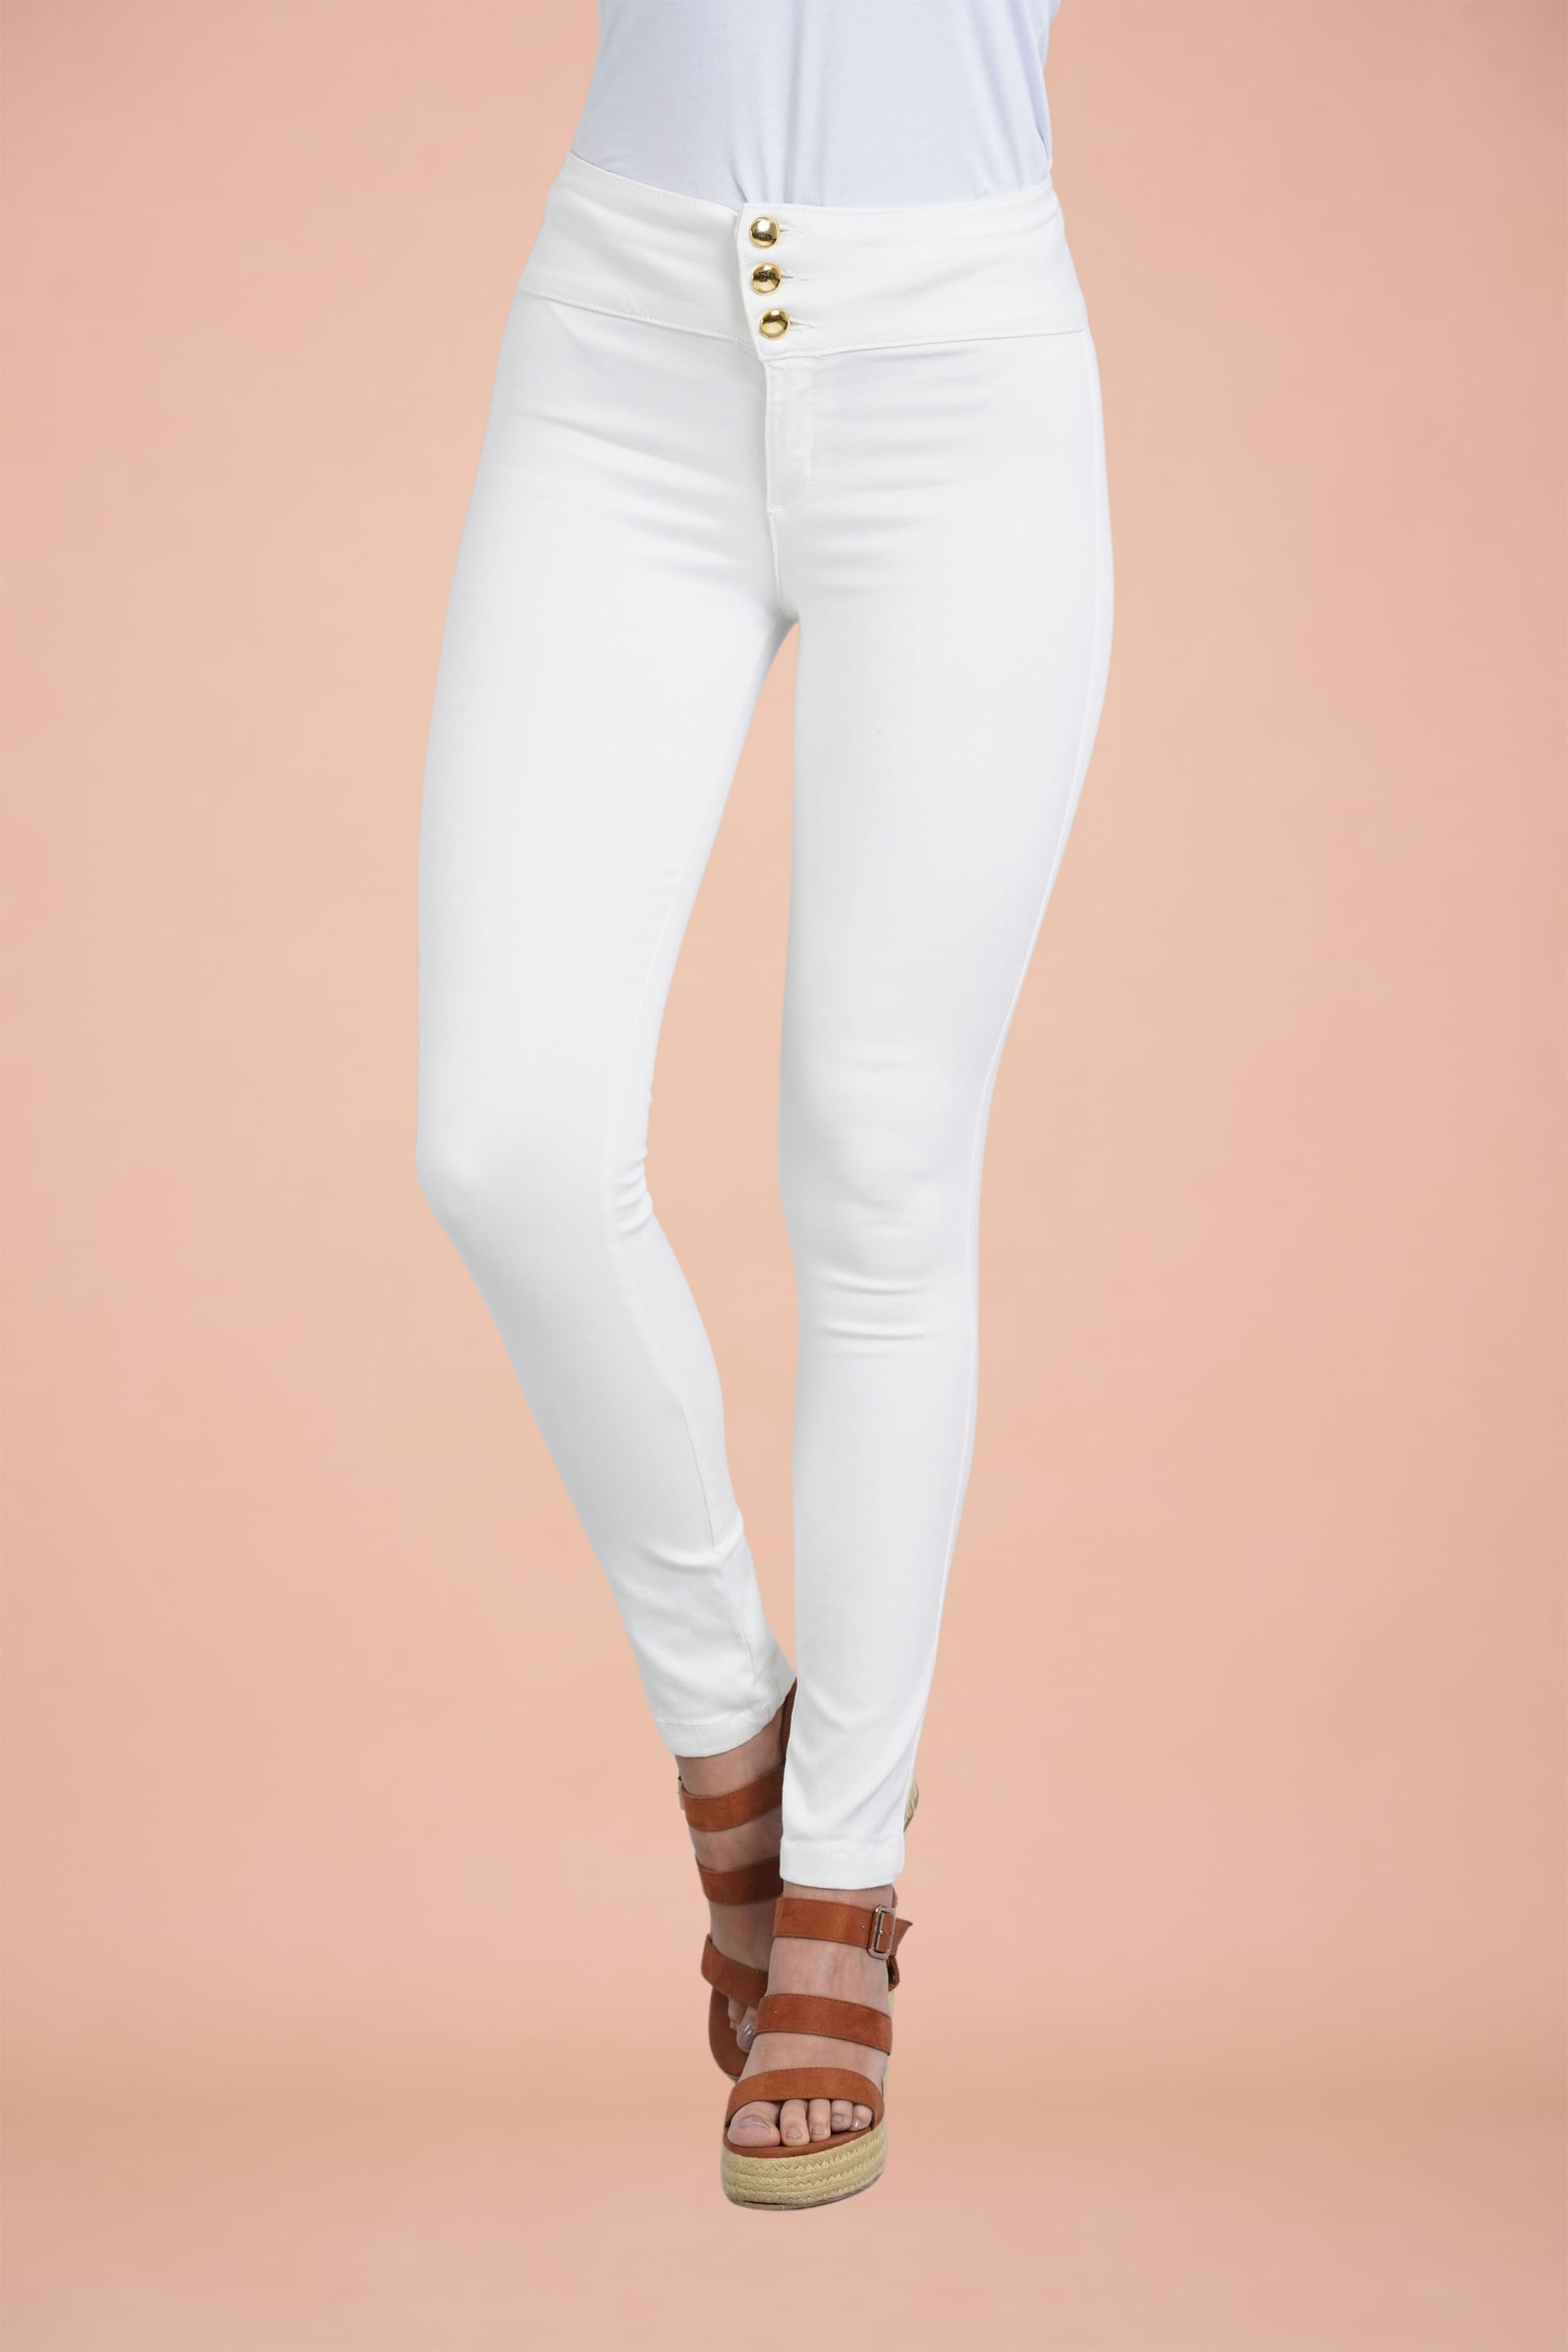 Catarata herida Nombrar Compra Pantalon para Mujer Color Blanco en www.surtitodo.com.co -  surtitodoMobile